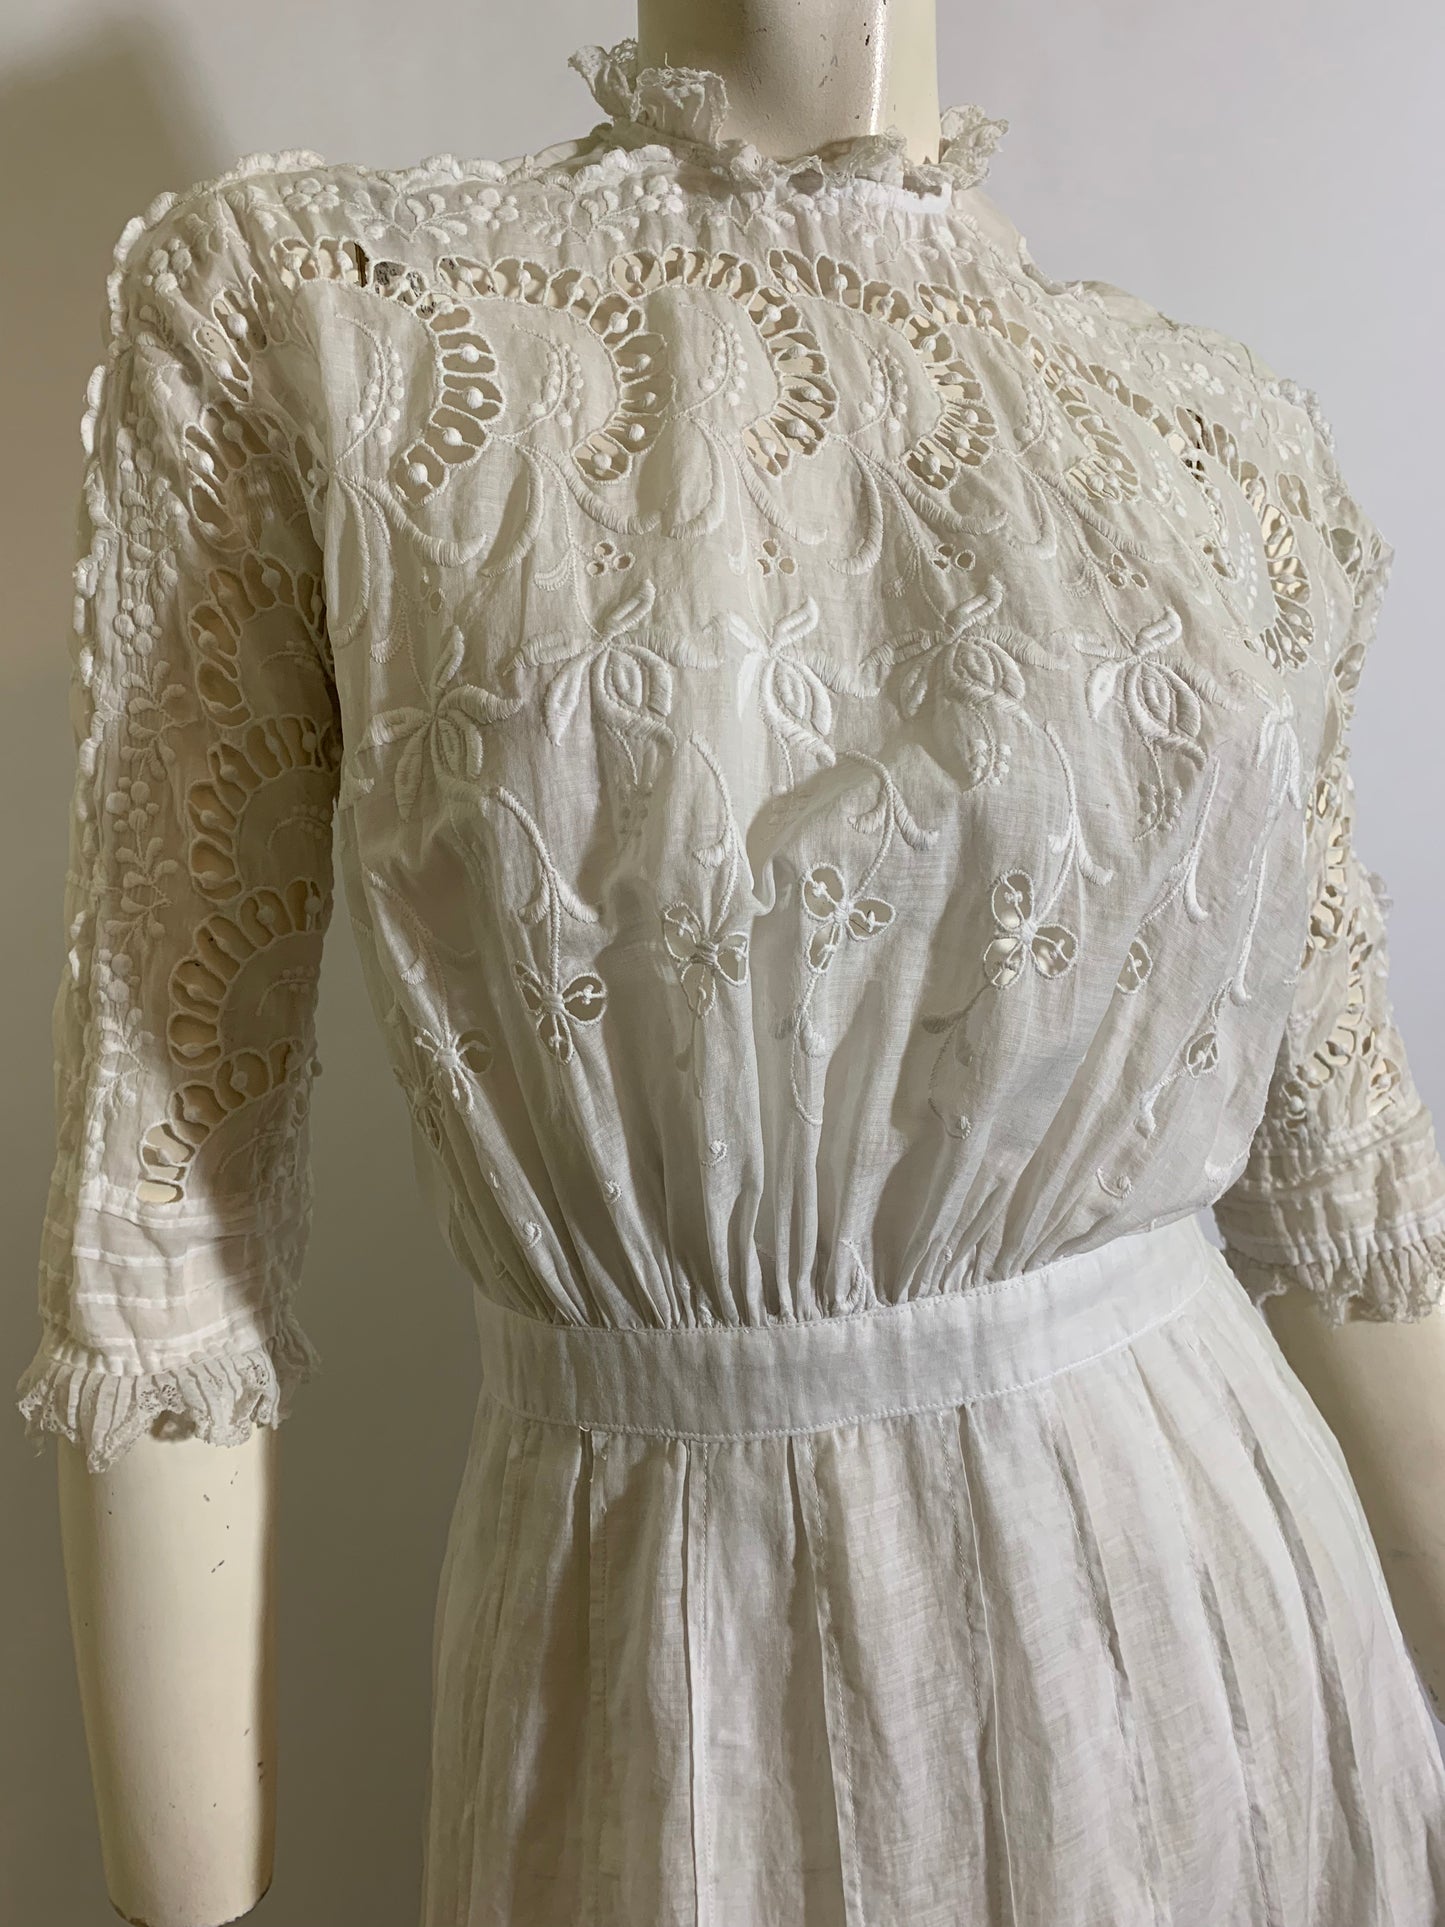 Tea Party Pretty Embroidered White Cotton Lace Dress circa 1910s